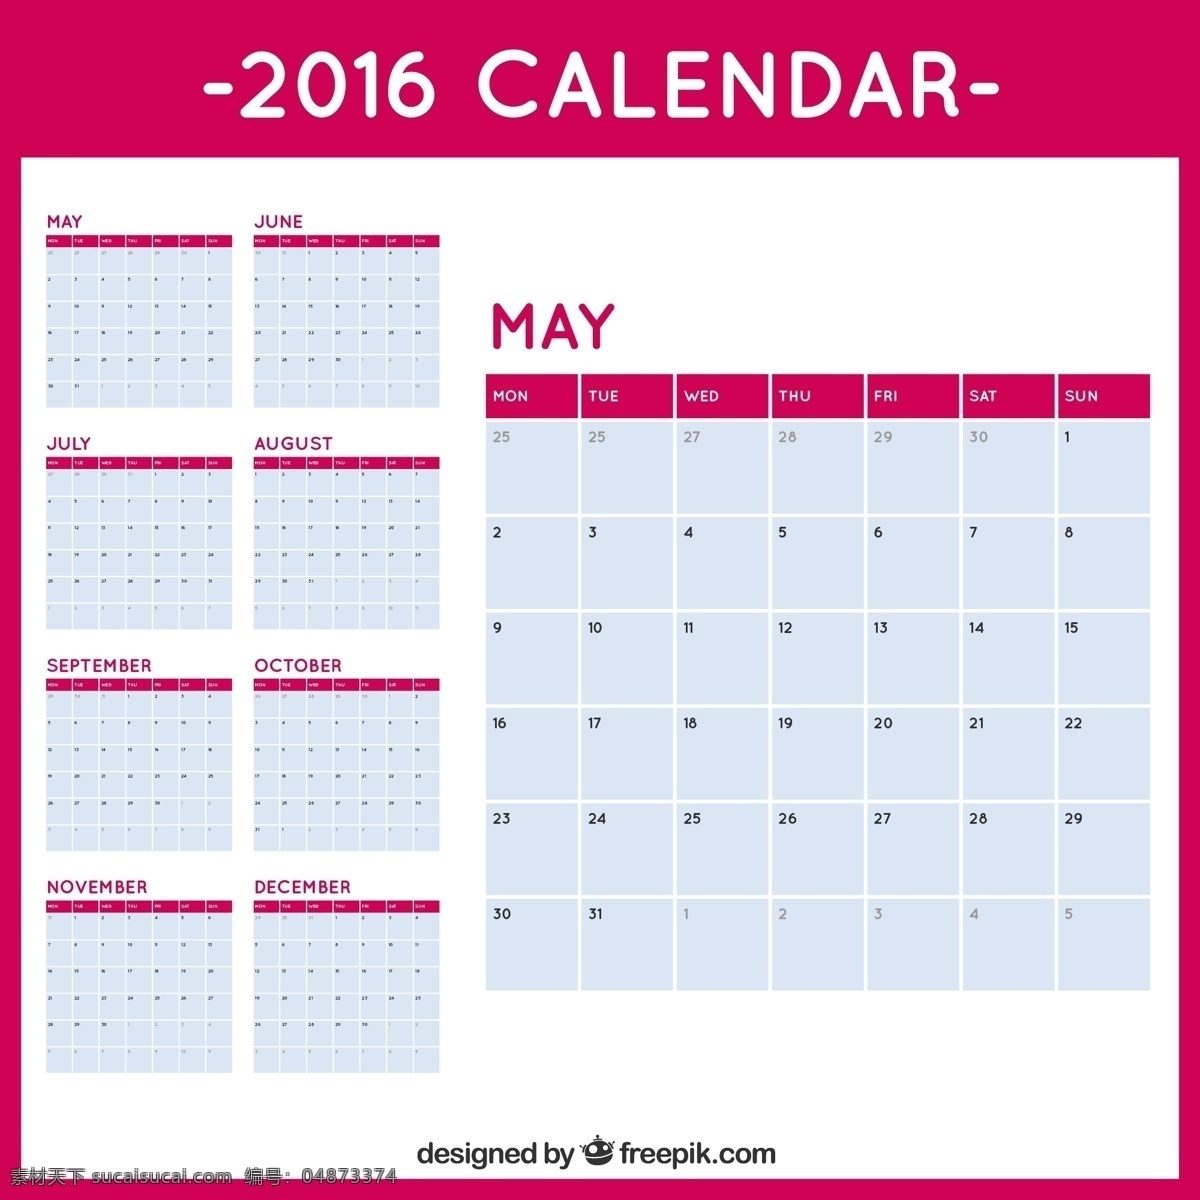 紫红色 日历 2016 日历模板 时间 数量 计划年 日期 进度 日记 日 月 周 日计划 组织者 每年 每月 每周 白色